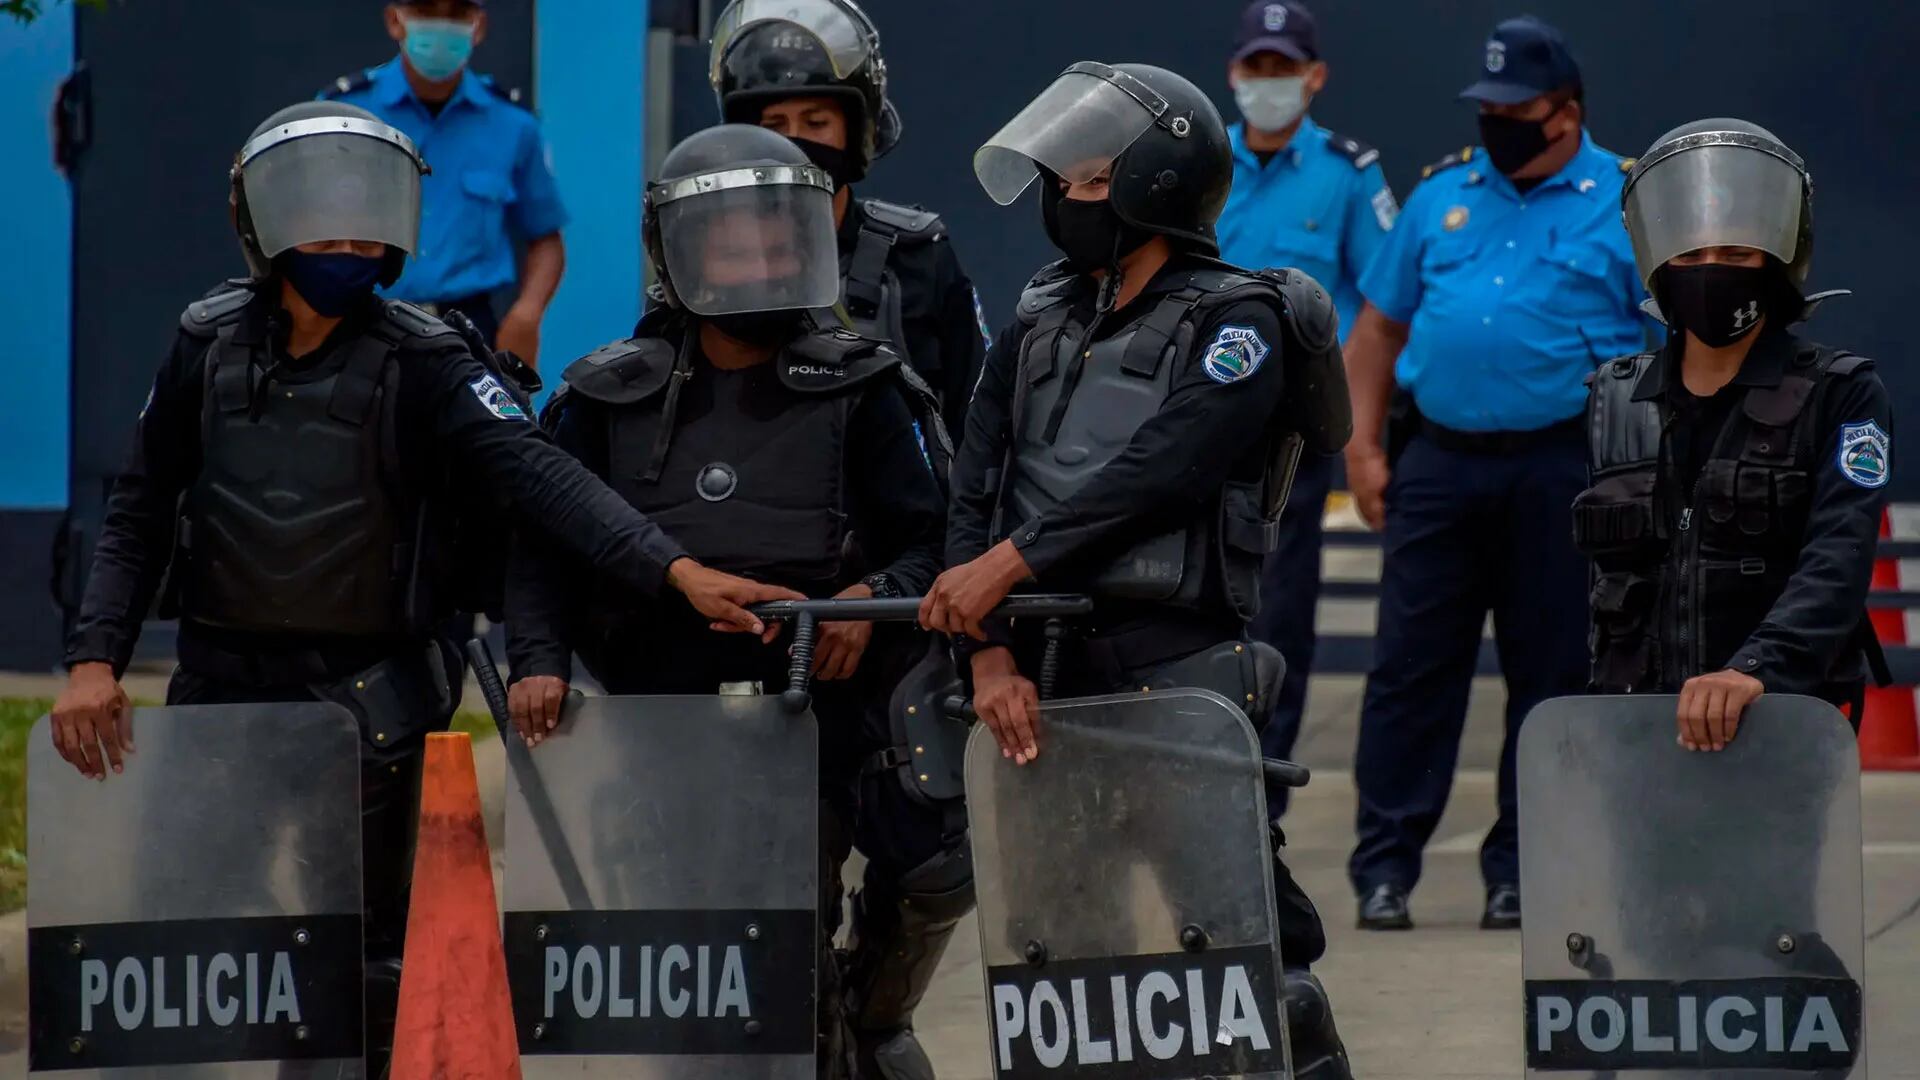 La propuesta de los legisladores controlados por el régimen de Daniel Ortega elimina la naturaleza “profesional, apolítica, apartidista, obediente y no deliberante” de esa institución, y ofrece cárcel a los “oficiales rebeldes”